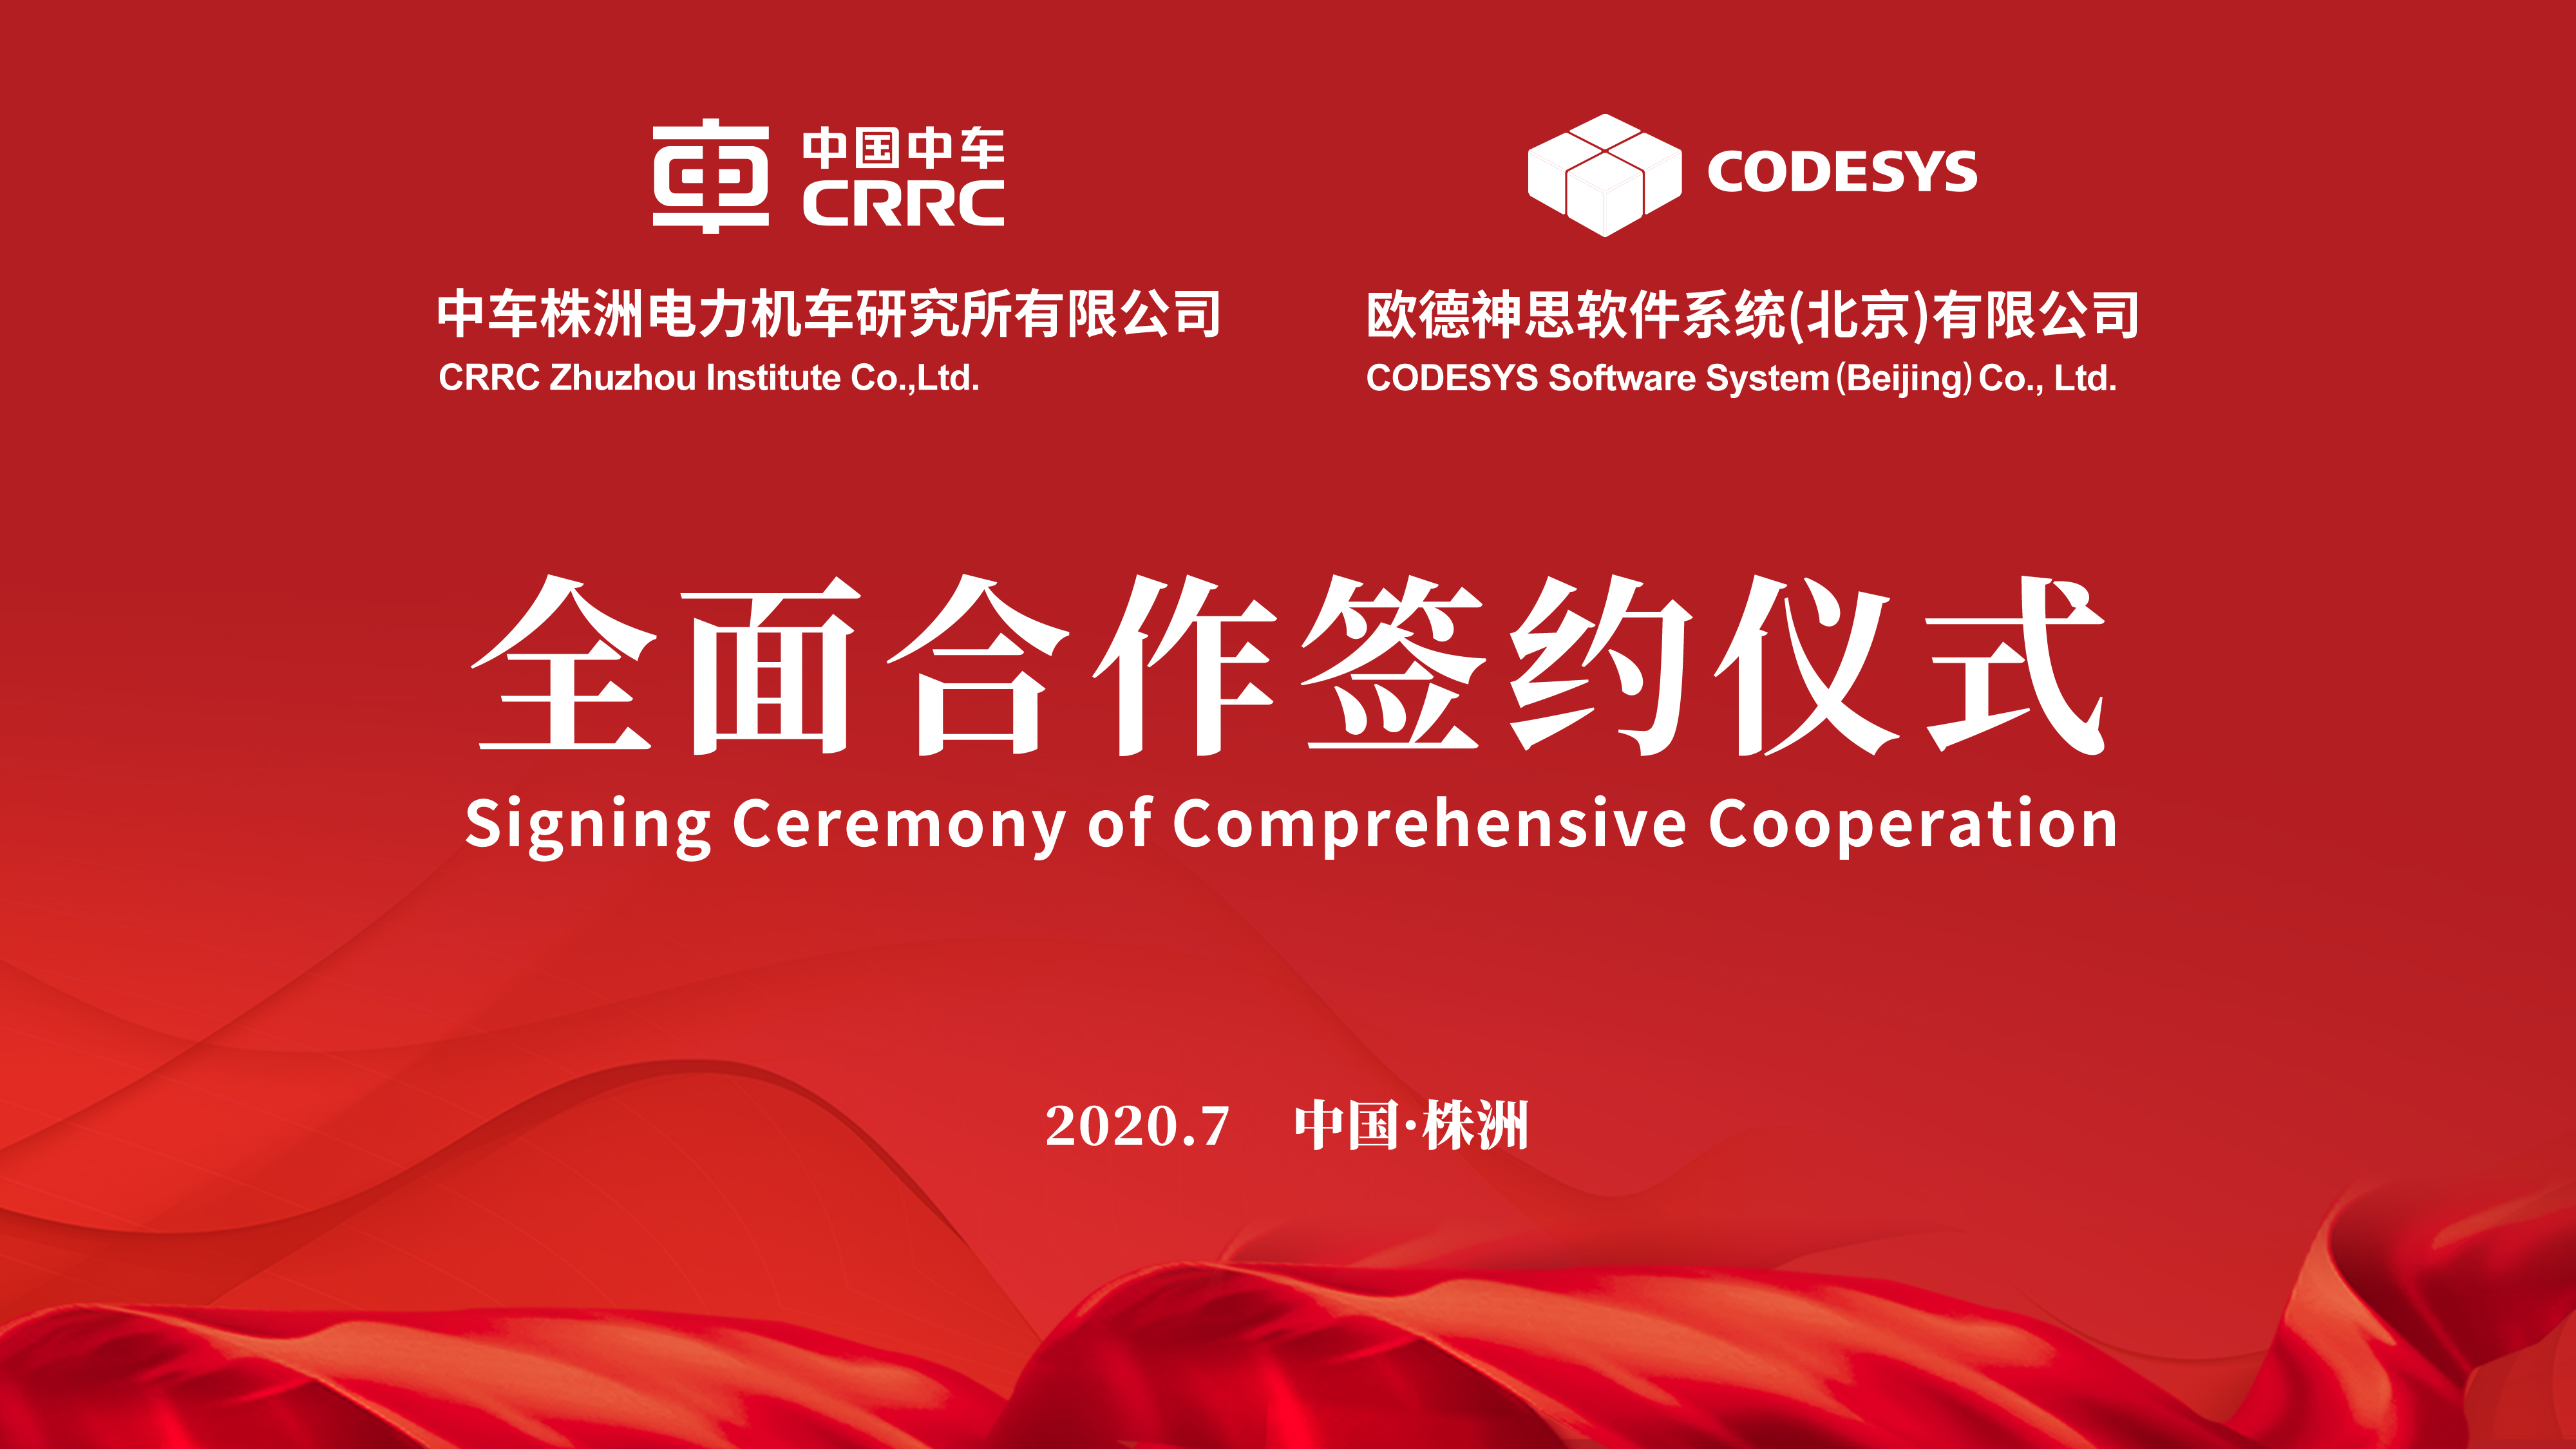 德国CODESYS软件集团与中车株洲电力机车研究所有限公司 签署全面合作协议